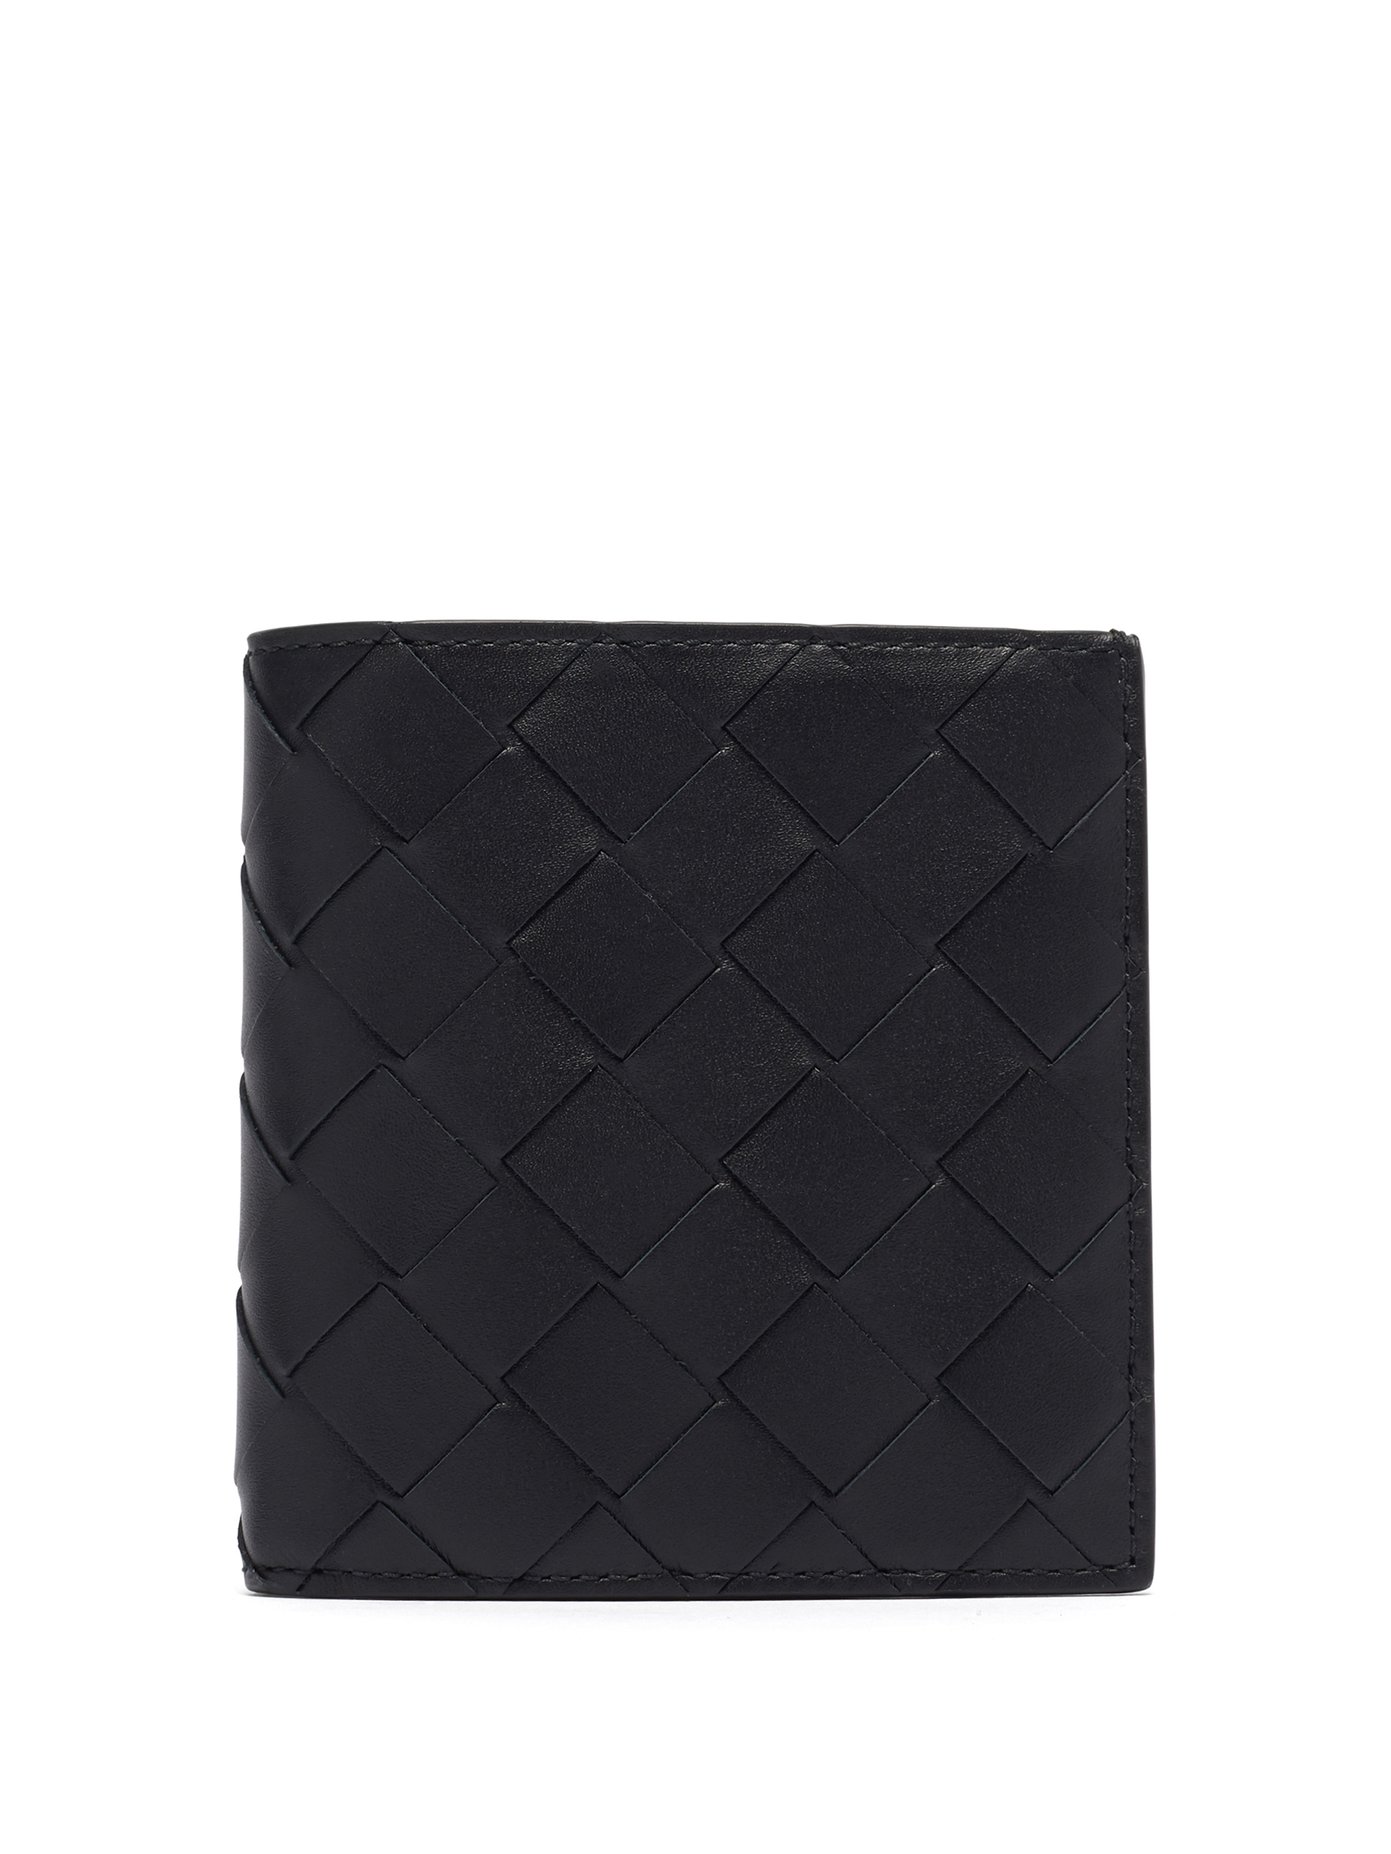 보테가 베네타 인트레치아토 반지갑 Bottega Veneta BLACK Intrecciato leather bi-fold wallet